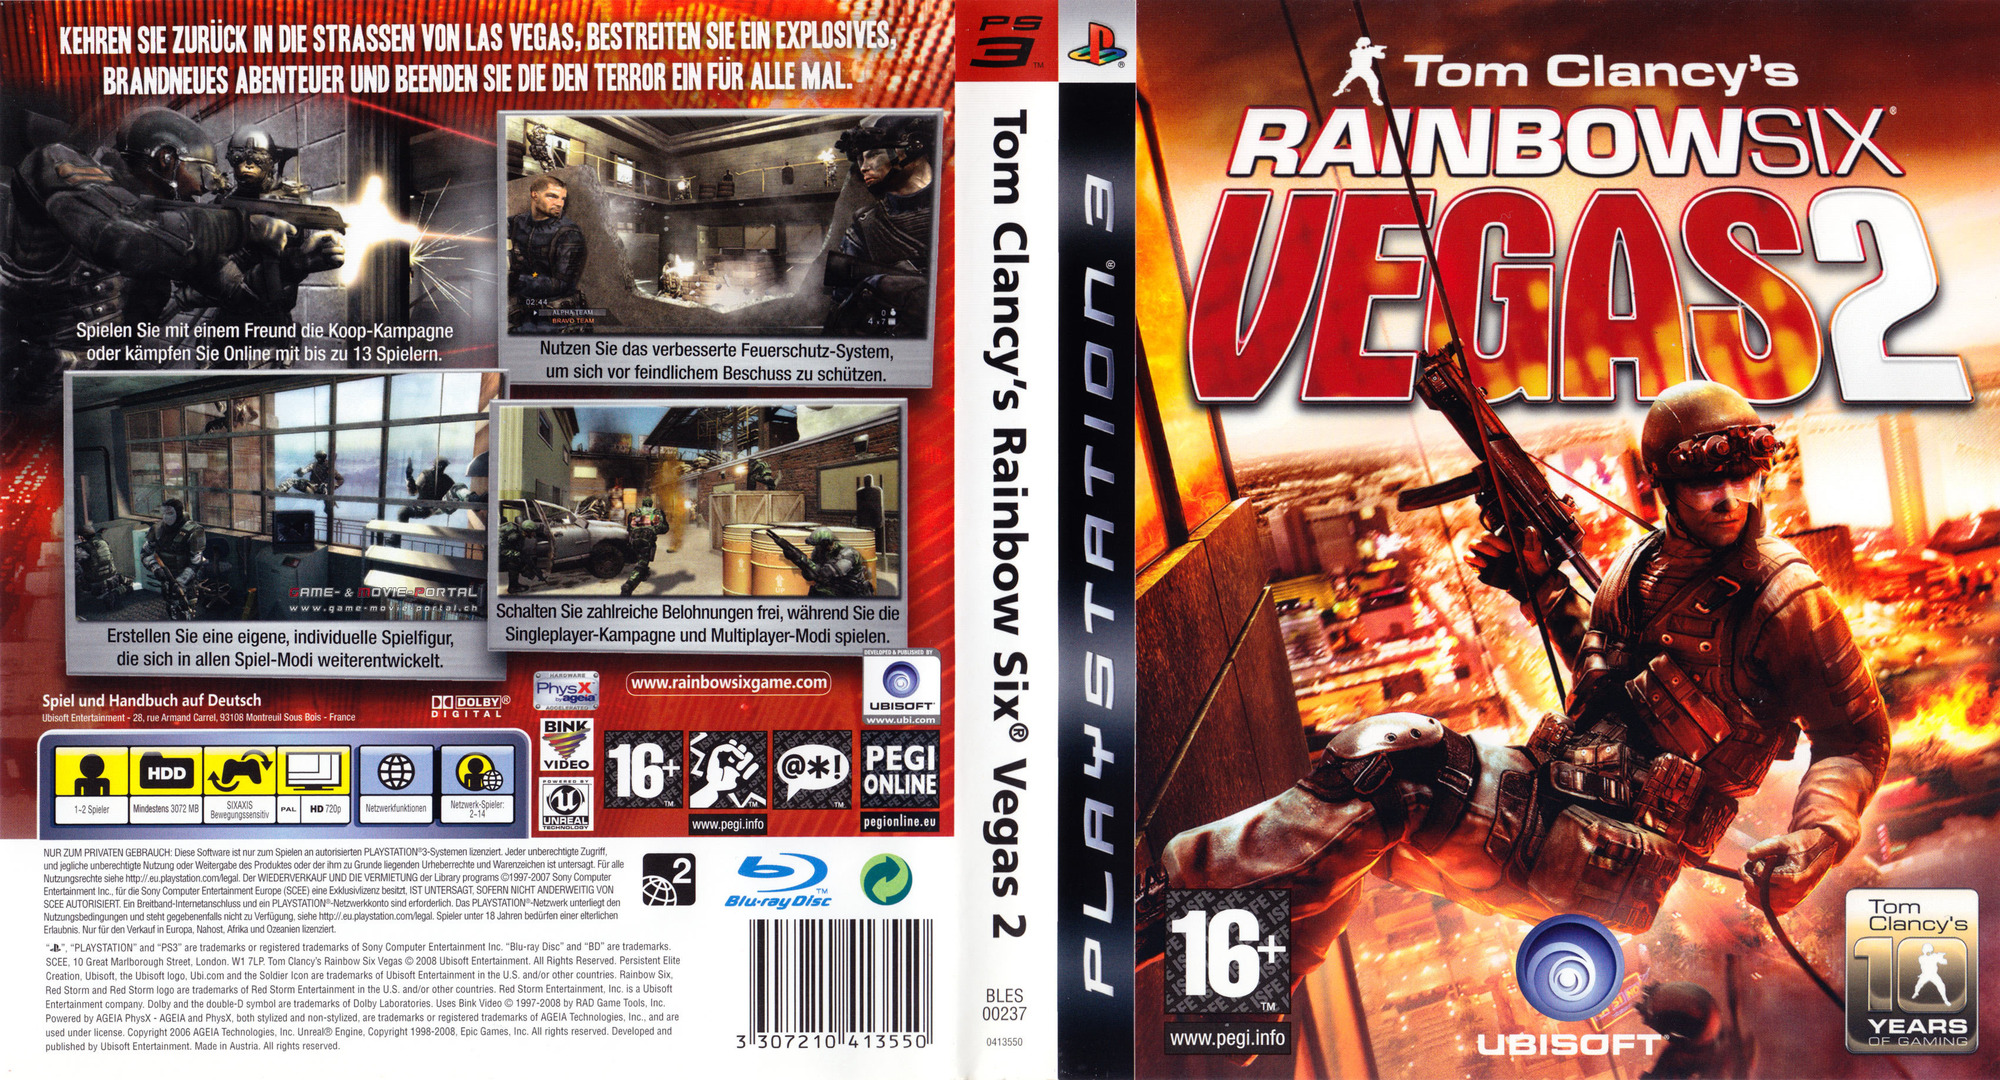 Uitdrukkelijk Zeldzaamheid Rentmeester Tom Clancy's Rainbow Six - Vegas 2 (PS3, Xbox 360, Windows, Xbox One)  (gamerip) (2007) MP3 - Download Tom Clancy's Rainbow Six - Vegas 2 (PS3,  Xbox 360, Windows, Xbox One) (gamerip) (2007) Soundtracks for FREE!